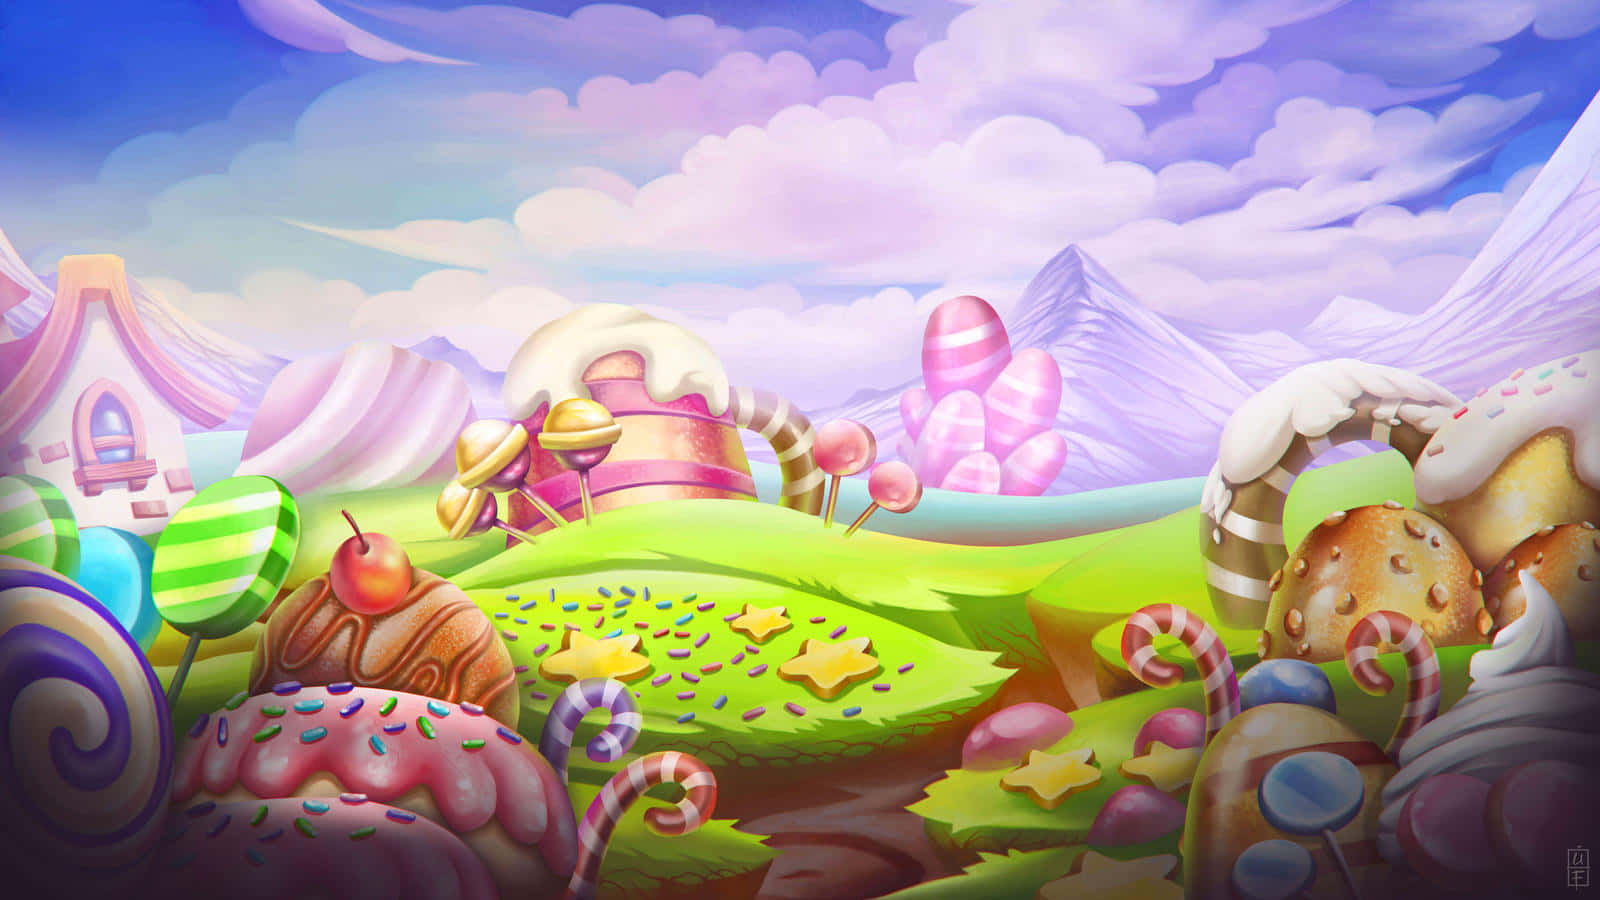 Déjatetransportar A Una Tierra De Pura Imaginación: Candy Land.